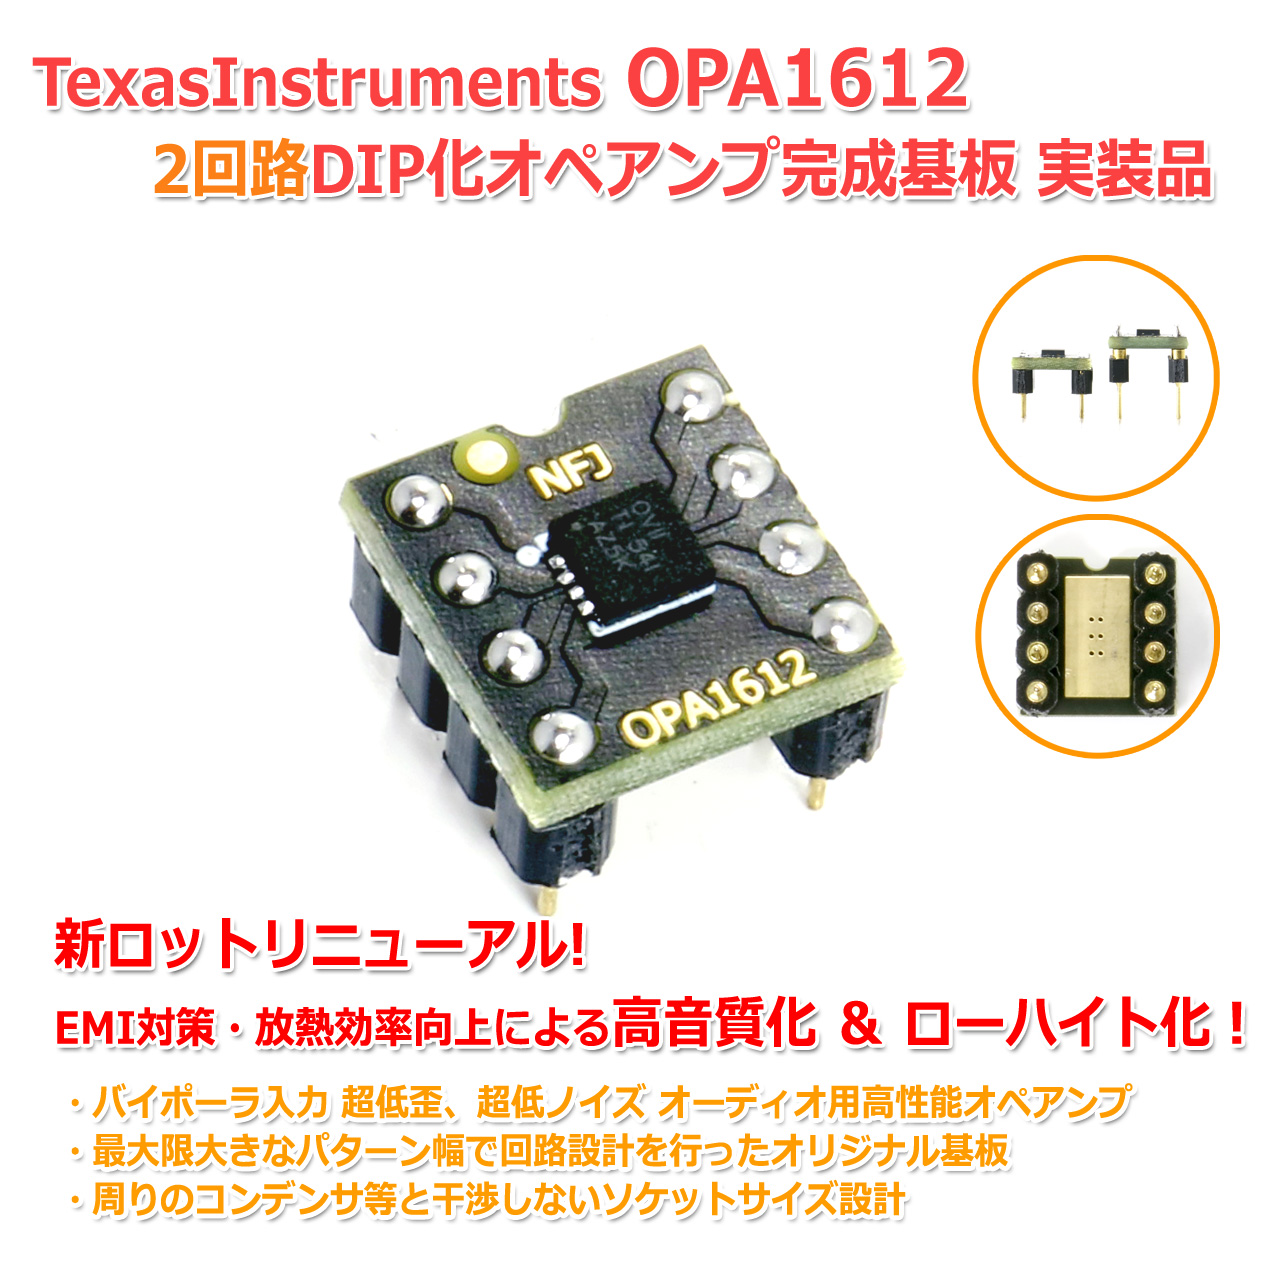 [簡易組立てキット版] TexasInstruments OPA1612 2回路8PinDIP化オペアンプ オーディオ用 高性能 超低歪 デュアル オペアンプ ローハイト